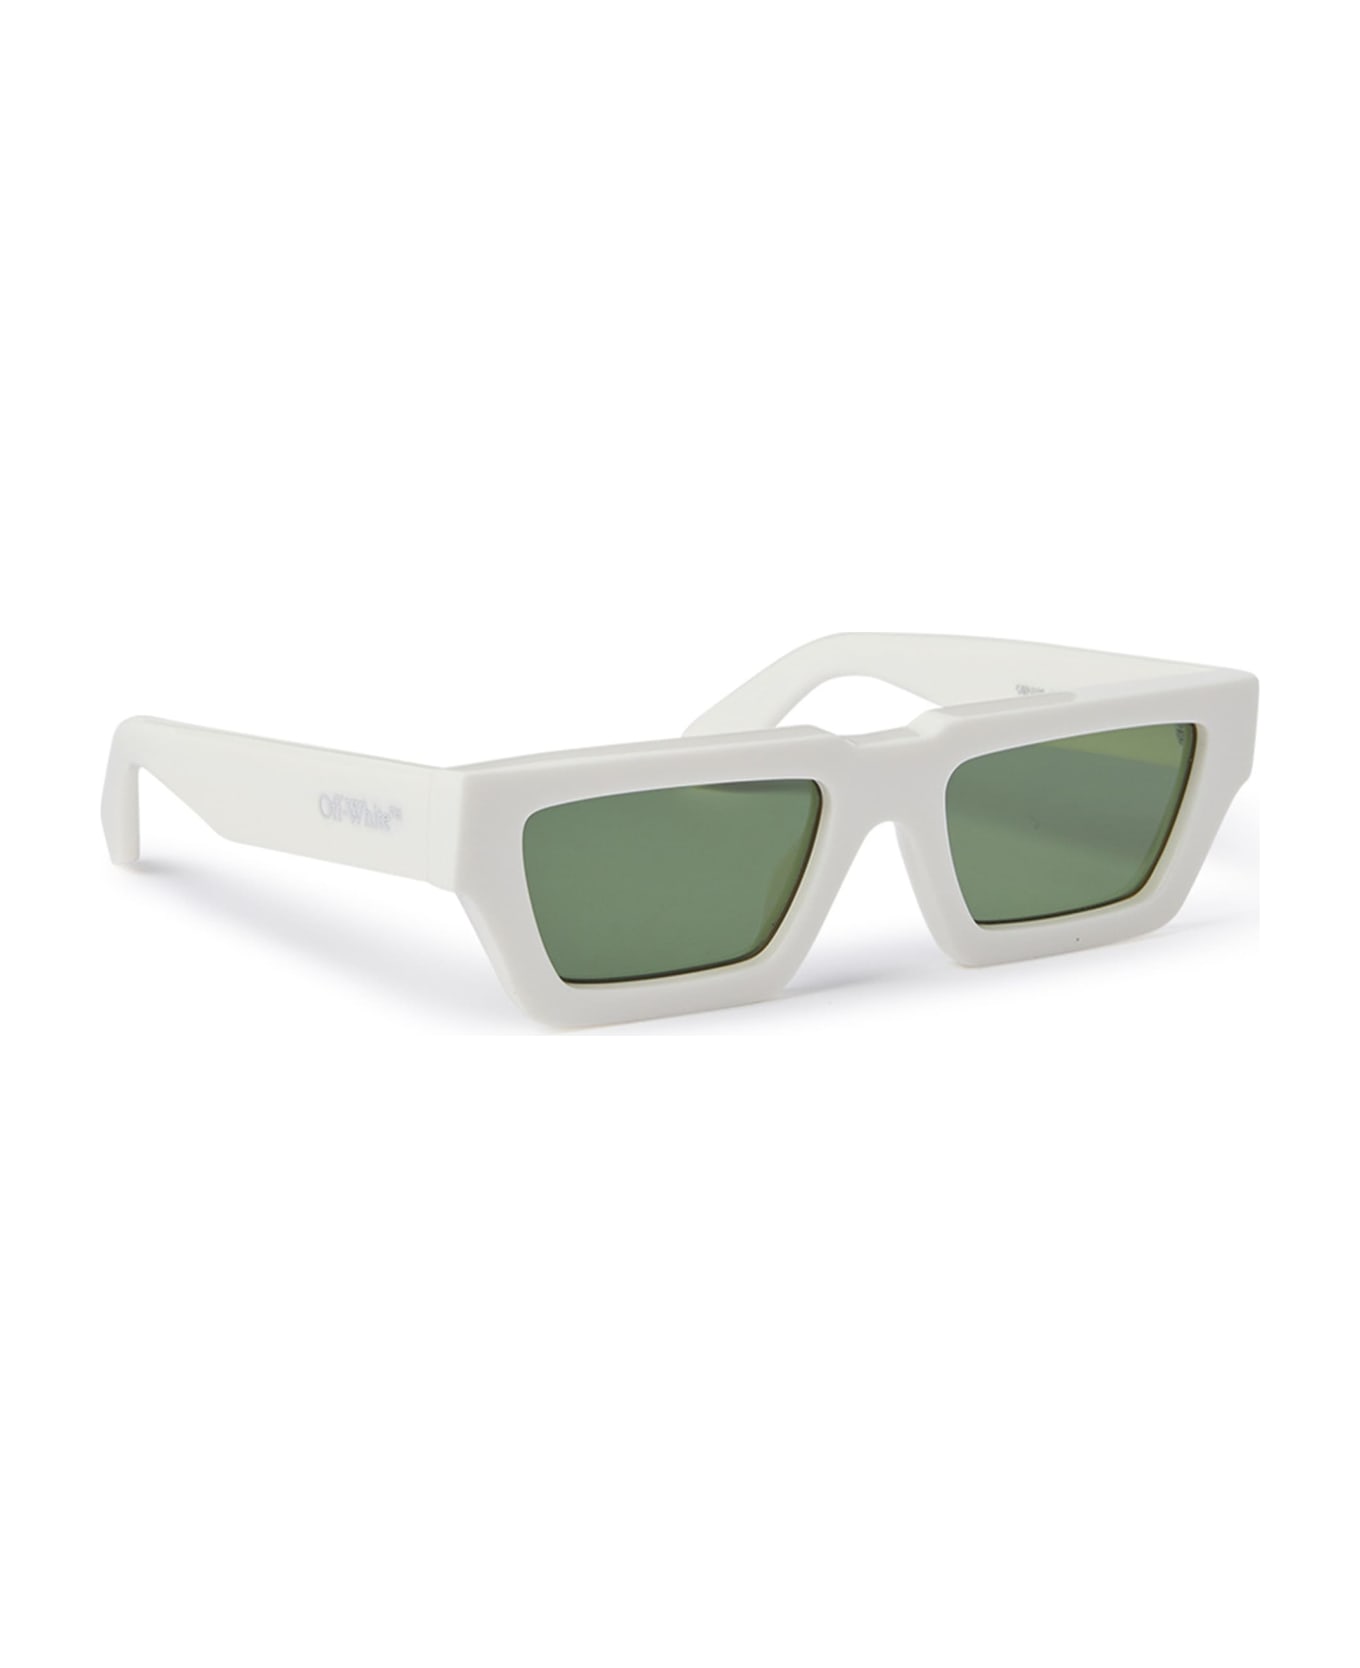 Off-White Manchester Sunglasses - White